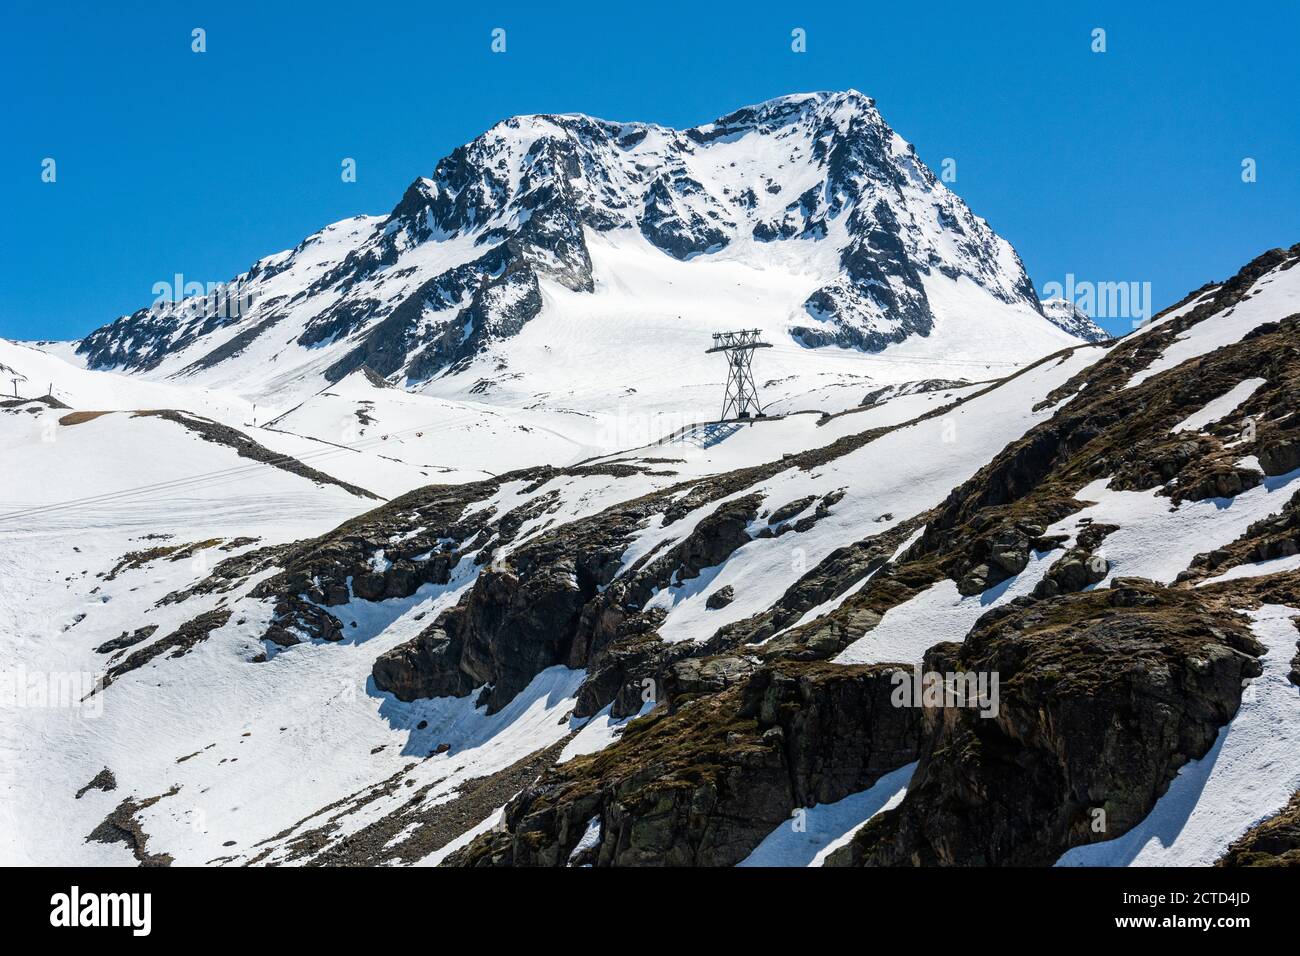 Snowy mountainous landscape in Stubai Glacier area in Tyrol, Austria. Stock Photo